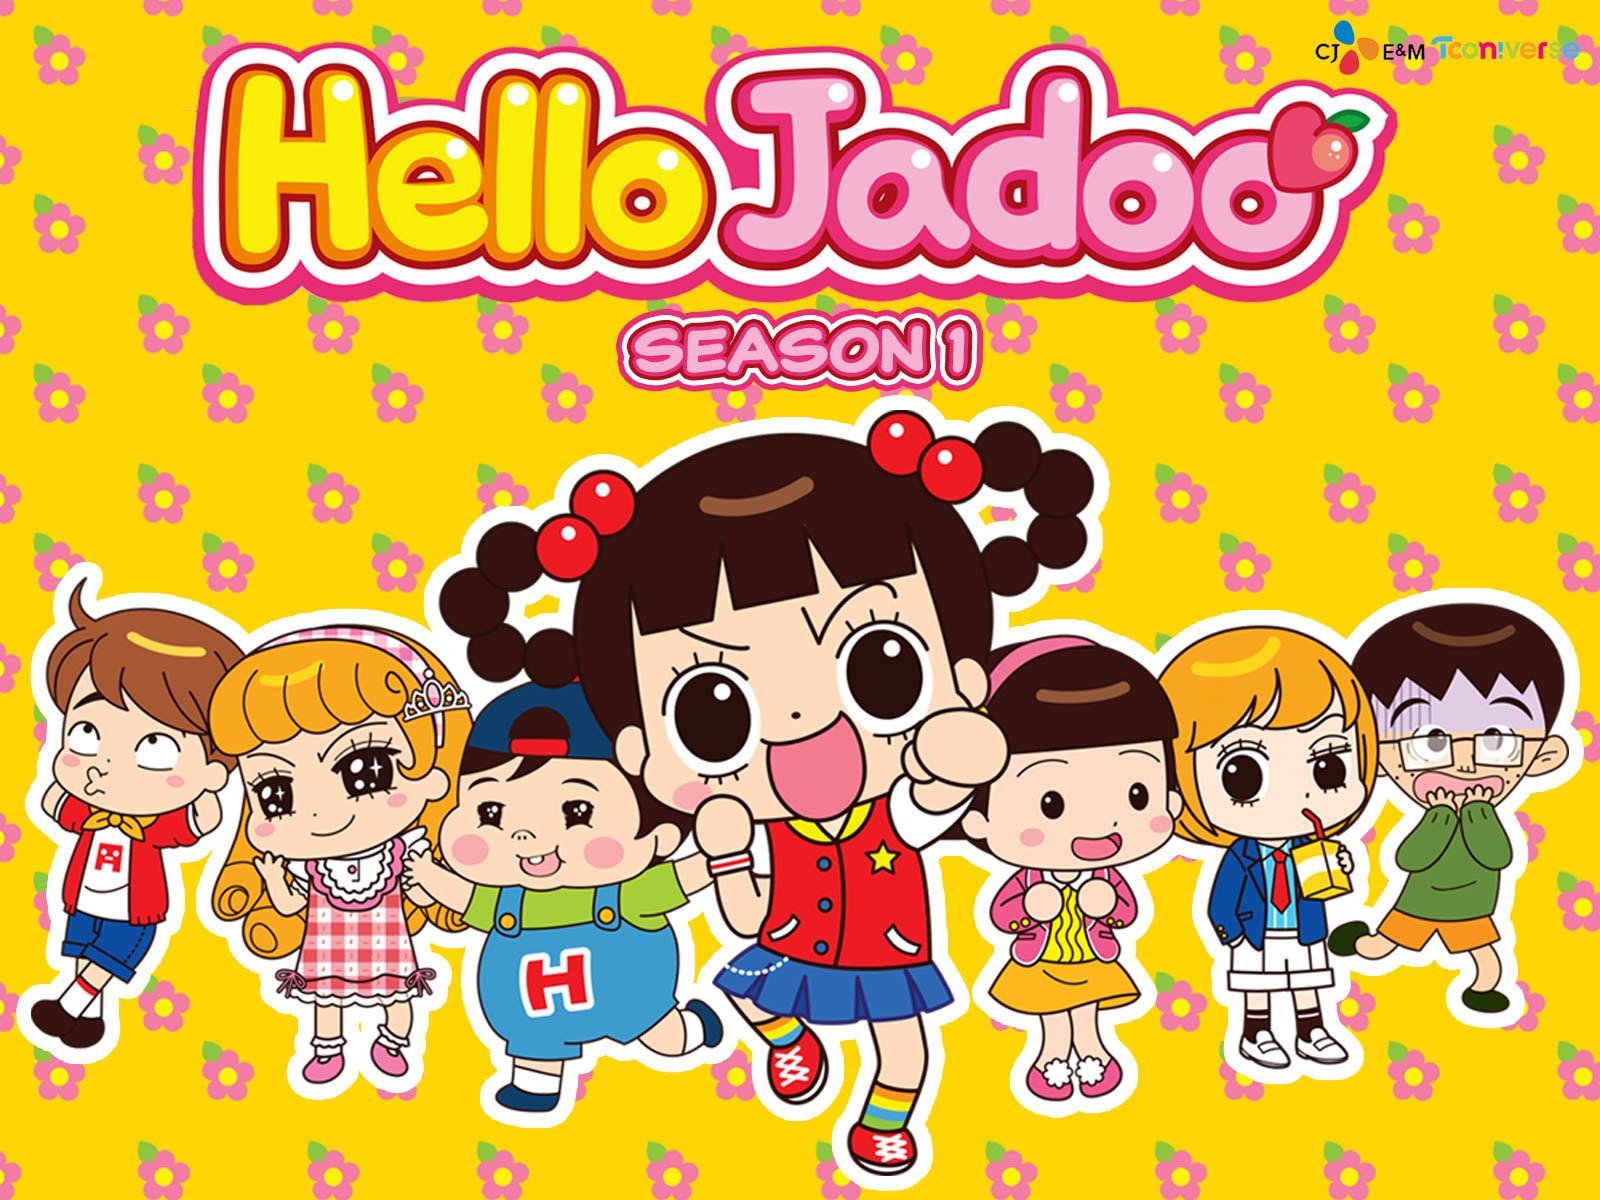 Watch Hello Jadoo